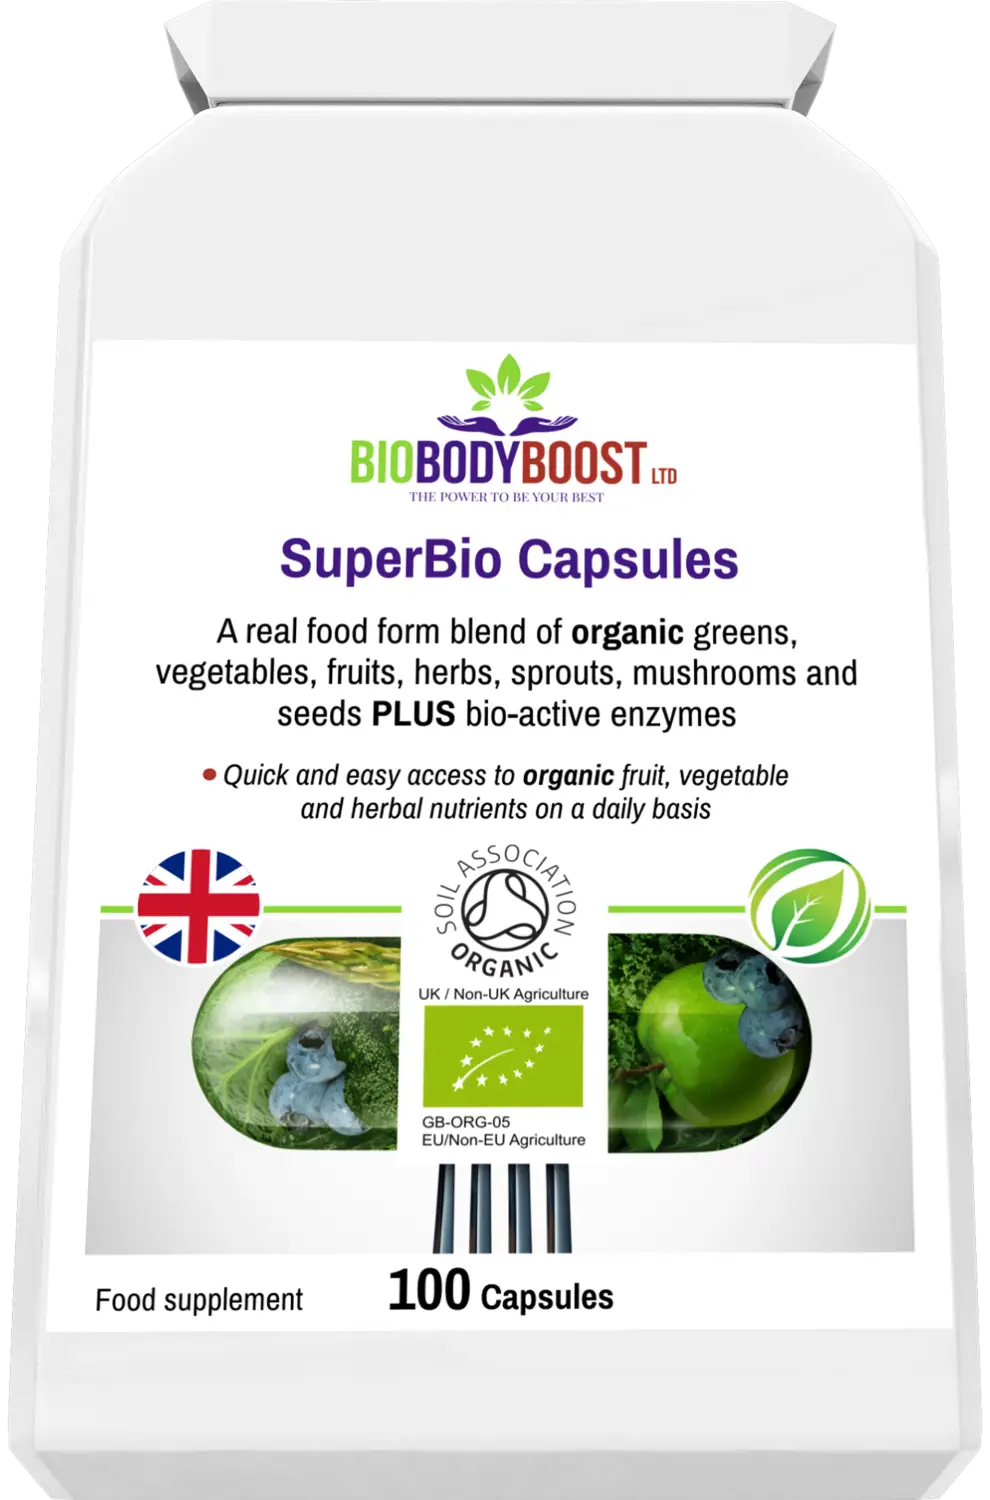 Superbio capsules vegan organic foods blend - vitamins & supplements